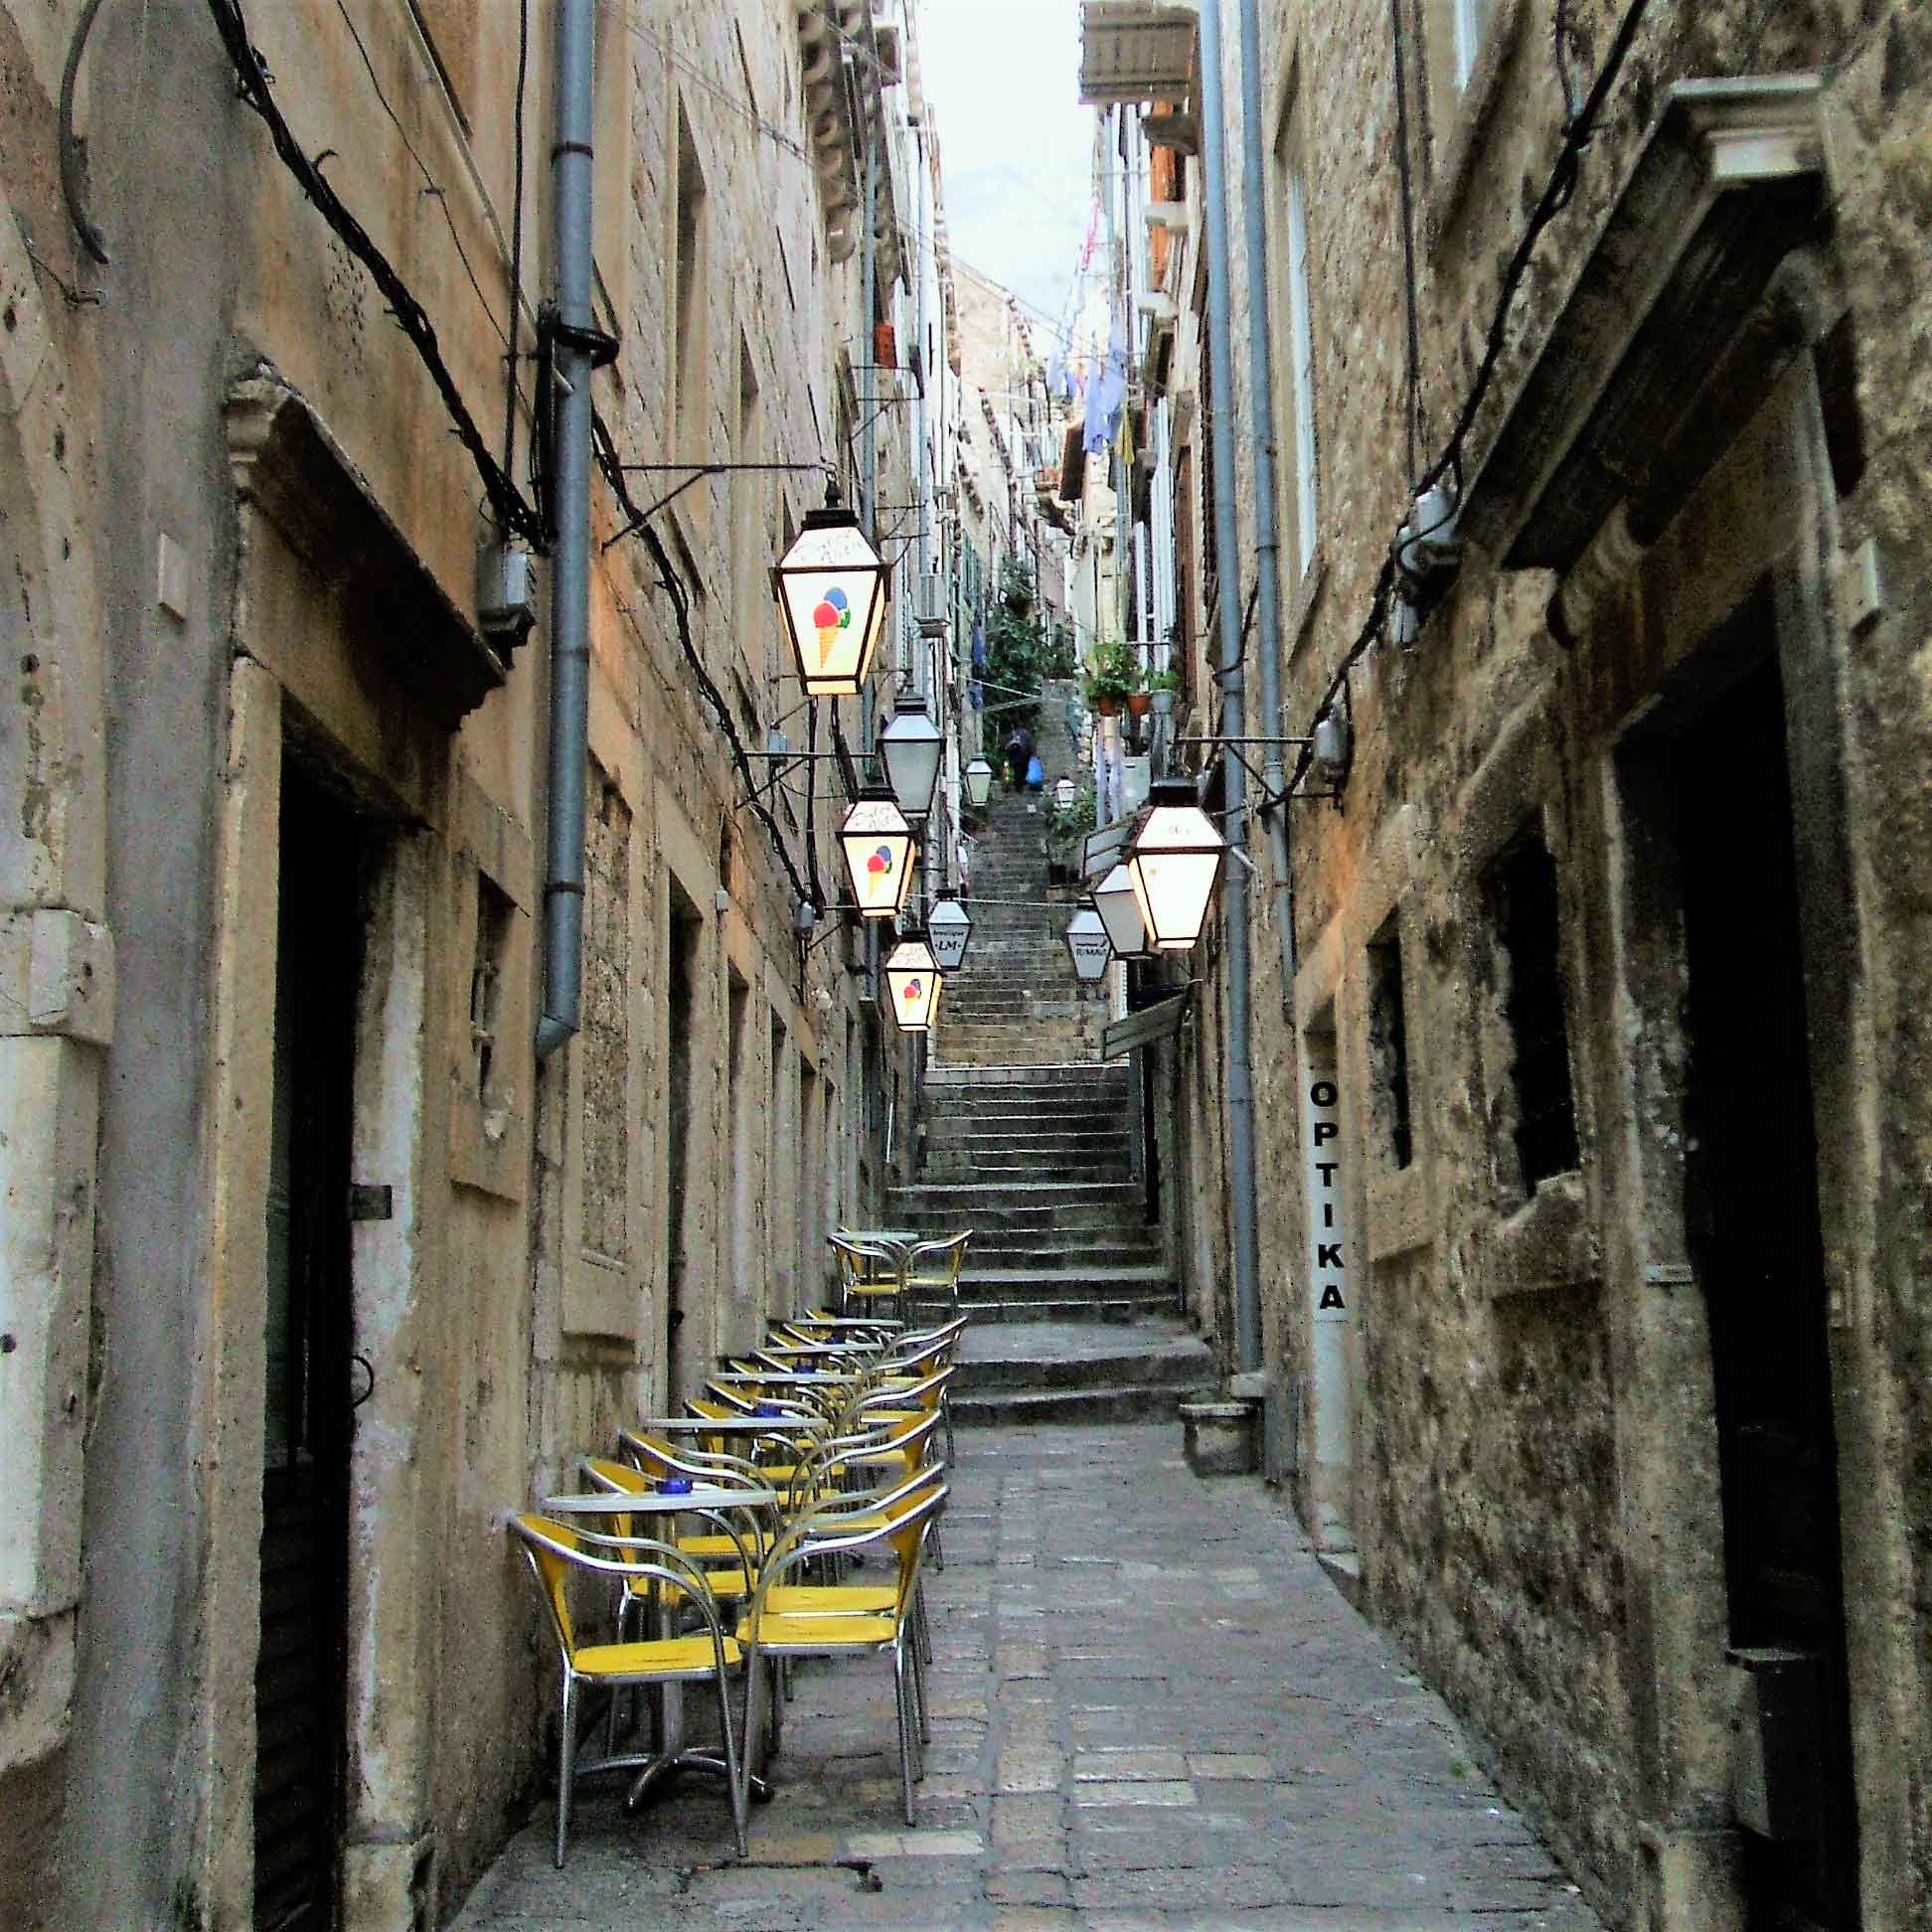 Em rua paralela, mesinhas à espera do freguês, lanternas e varais em Dubrovnik